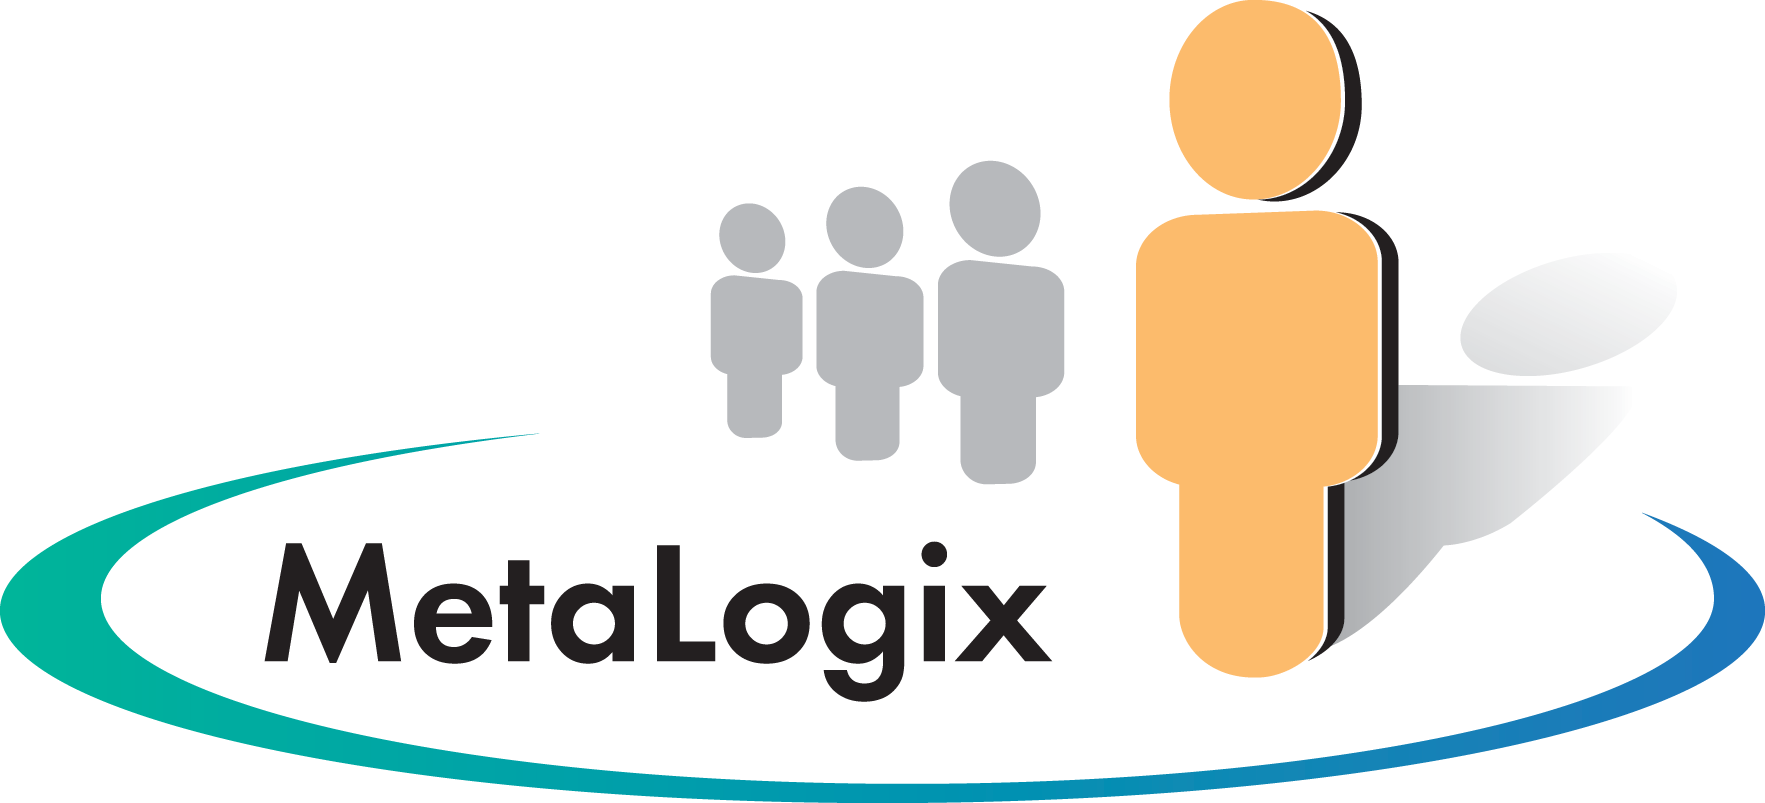 MetaLogix, Inc.